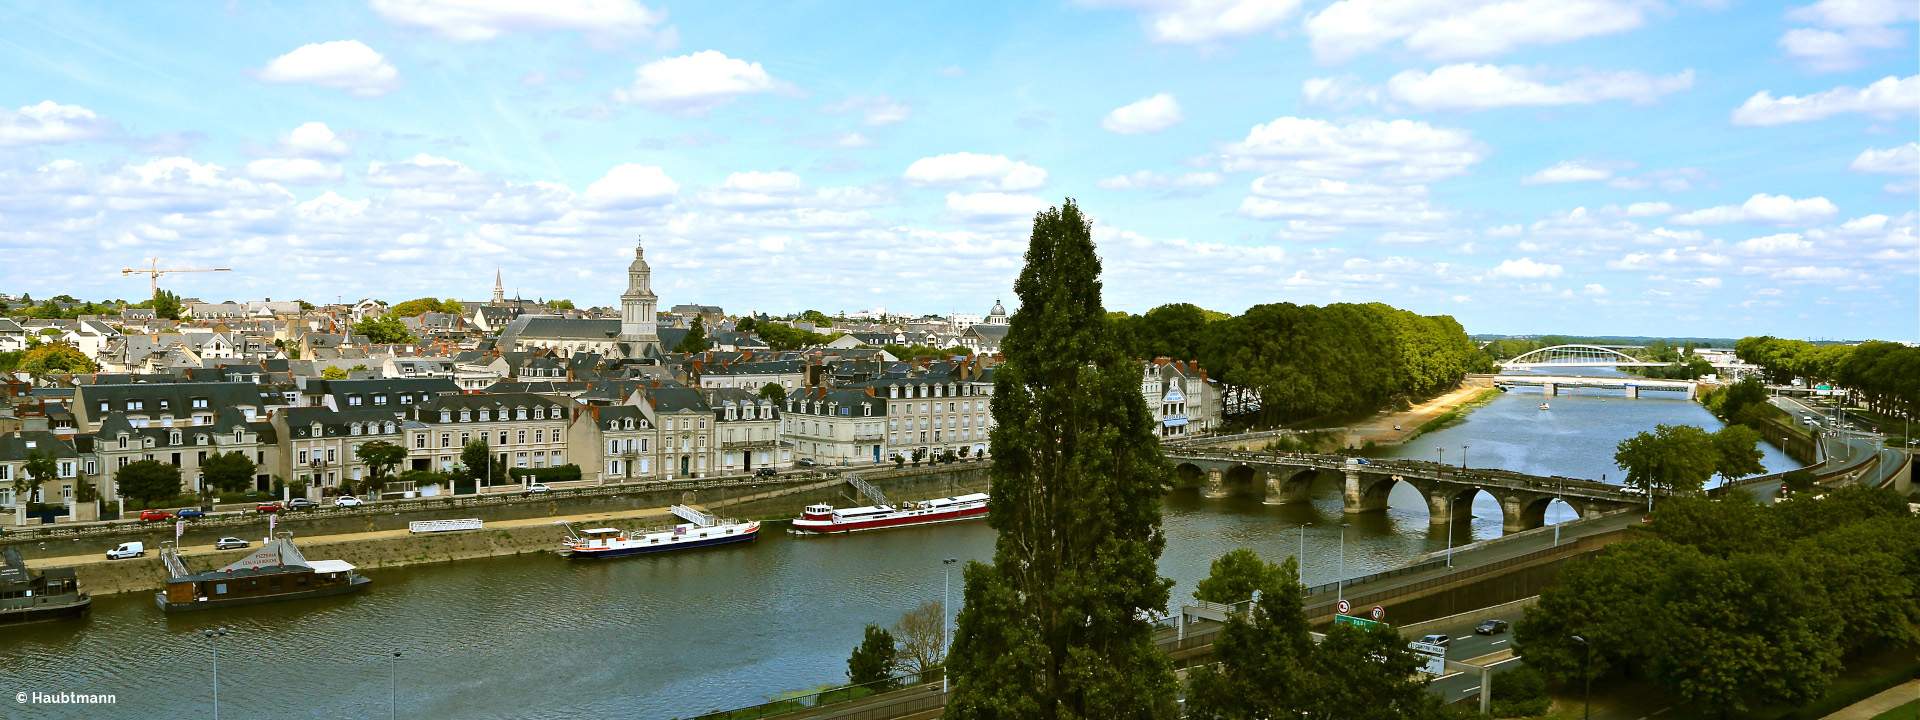 Die Loire: Ein Fluss zwischen Schlössern und Weingütern